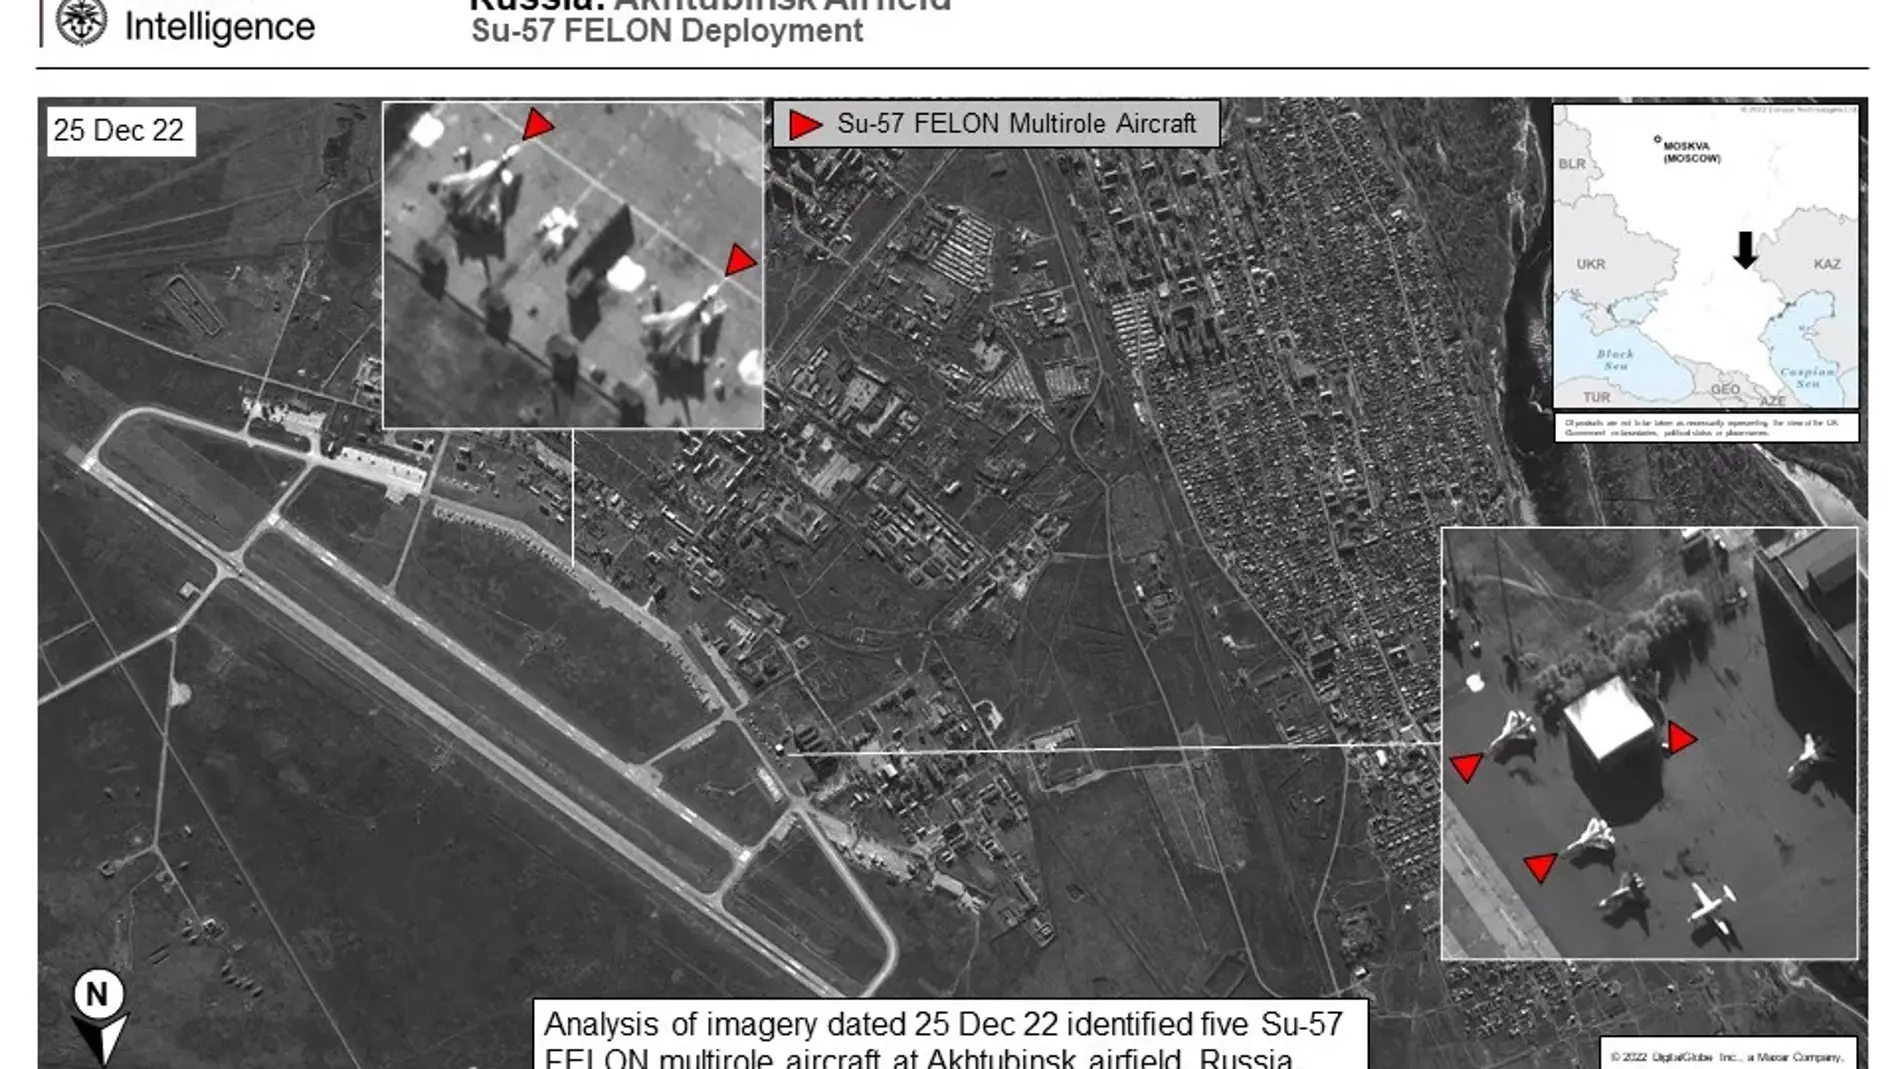 Imagen de satélite de la inteligencia británica del 25 de diciembre que mostraría los Su-57 Felon